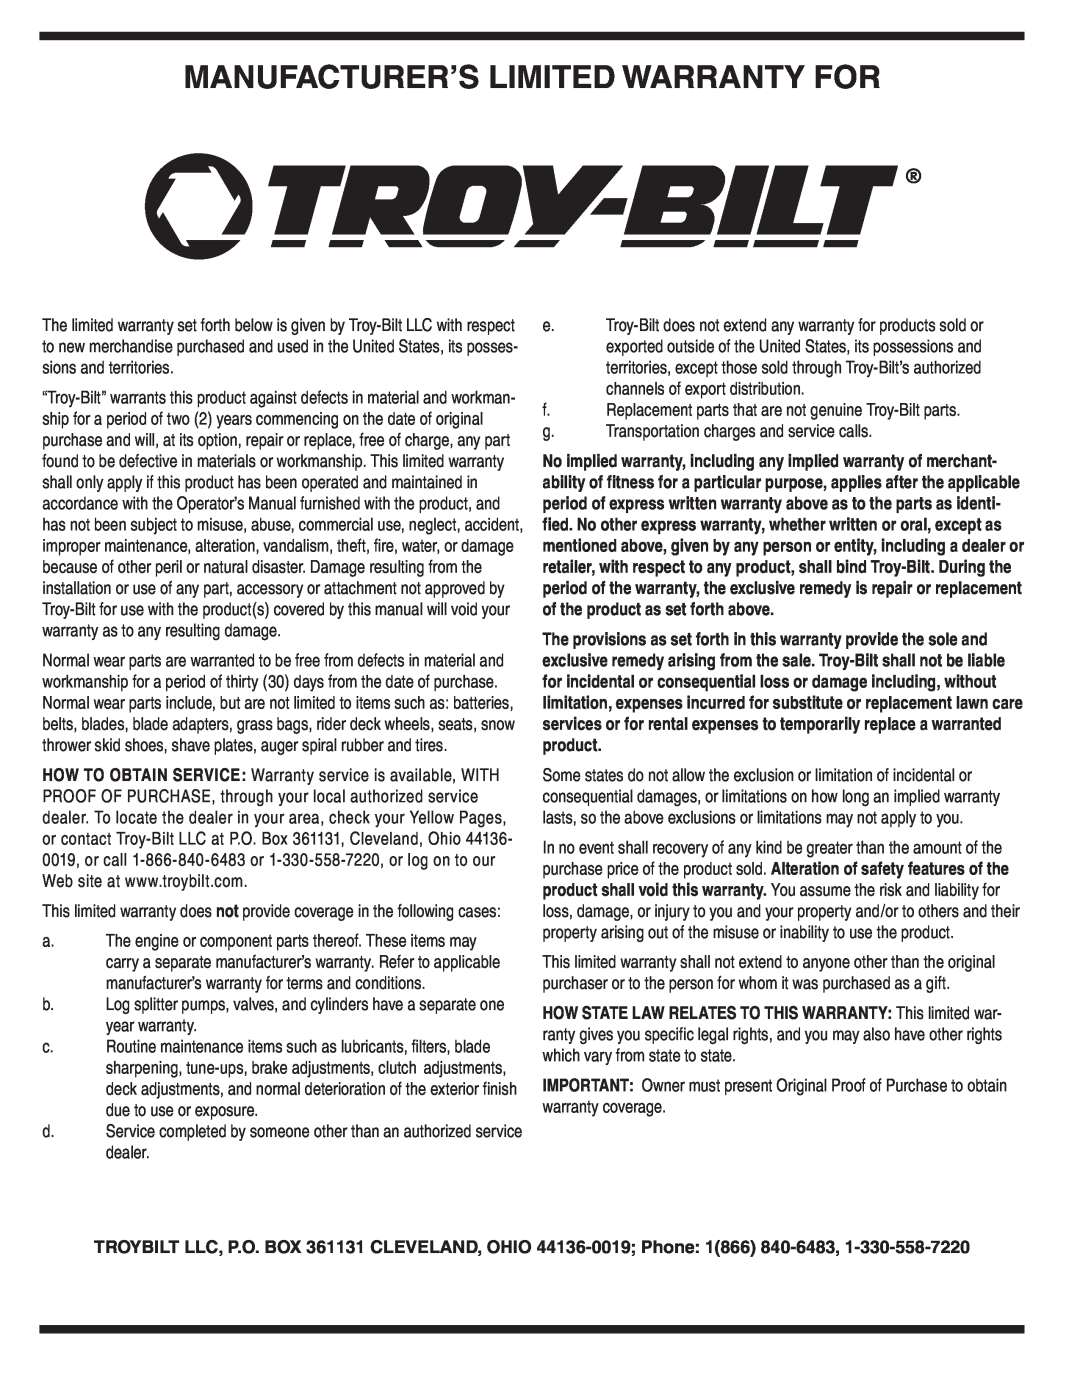 Troy-Bilt 429 warranty Manufacturer’S Limited Warranty For 